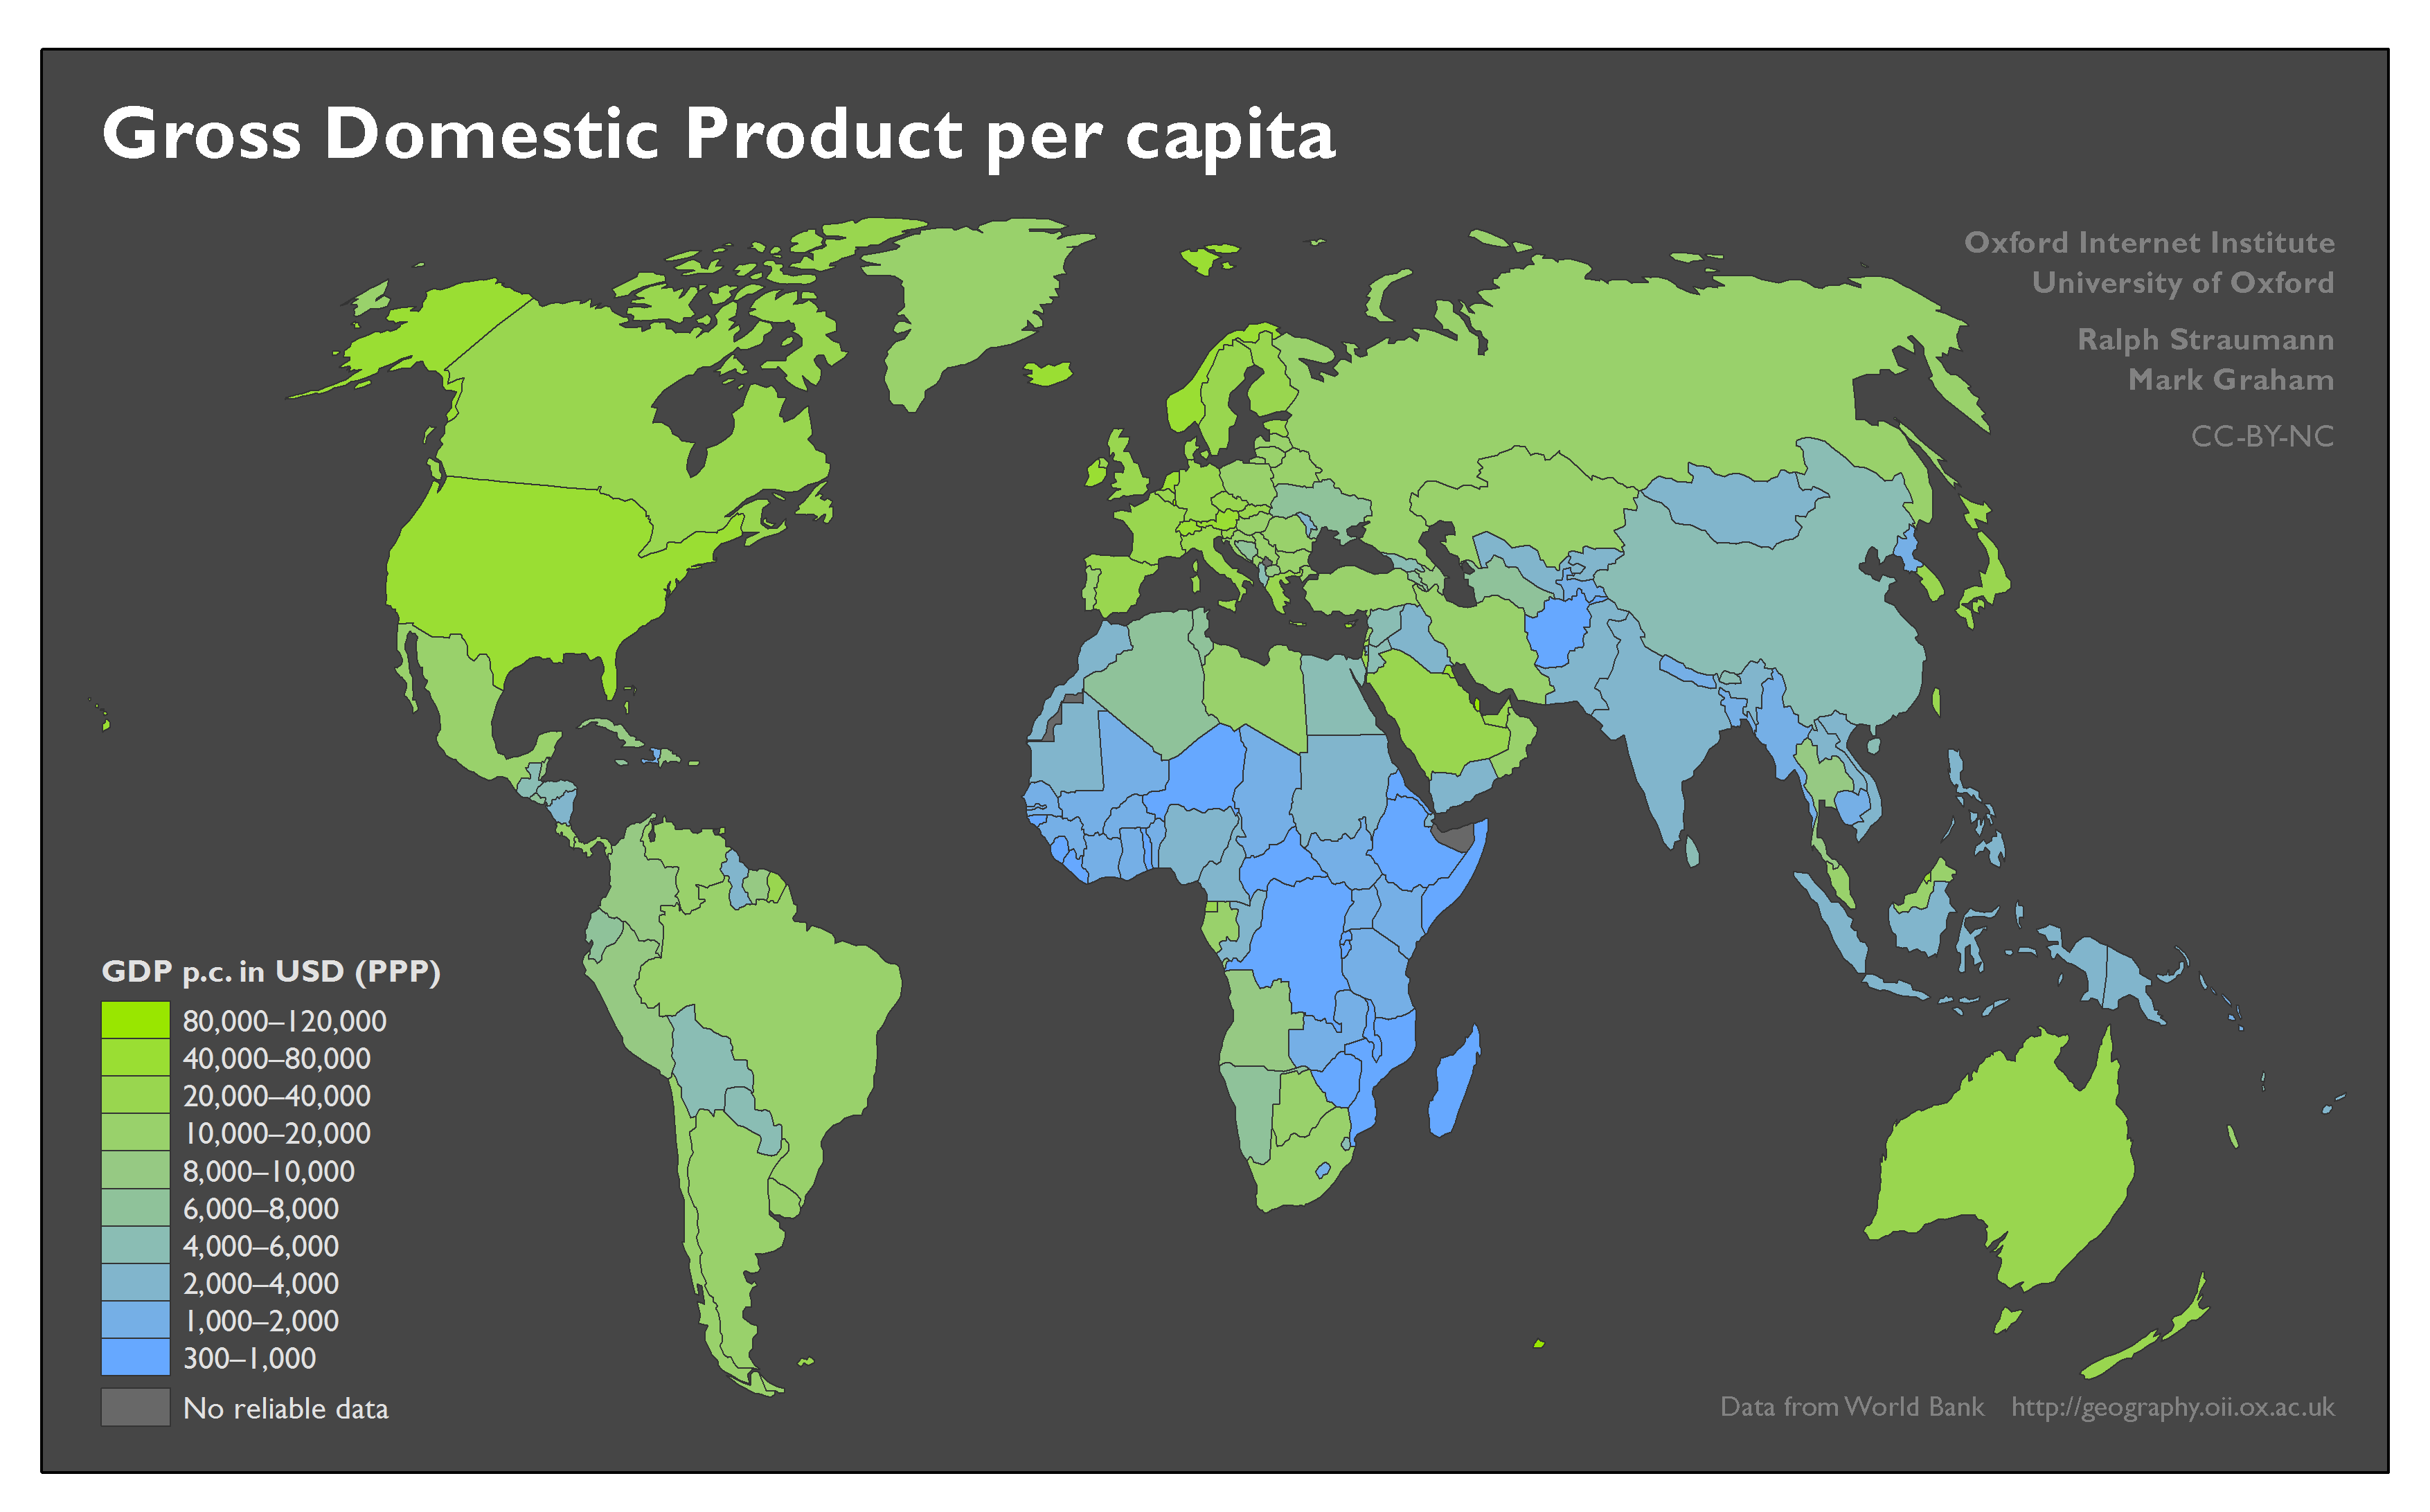 Страны с развитой развивающейся и переходной экономикой. Развитые страны на карте. Экономически развитые страны на карте.